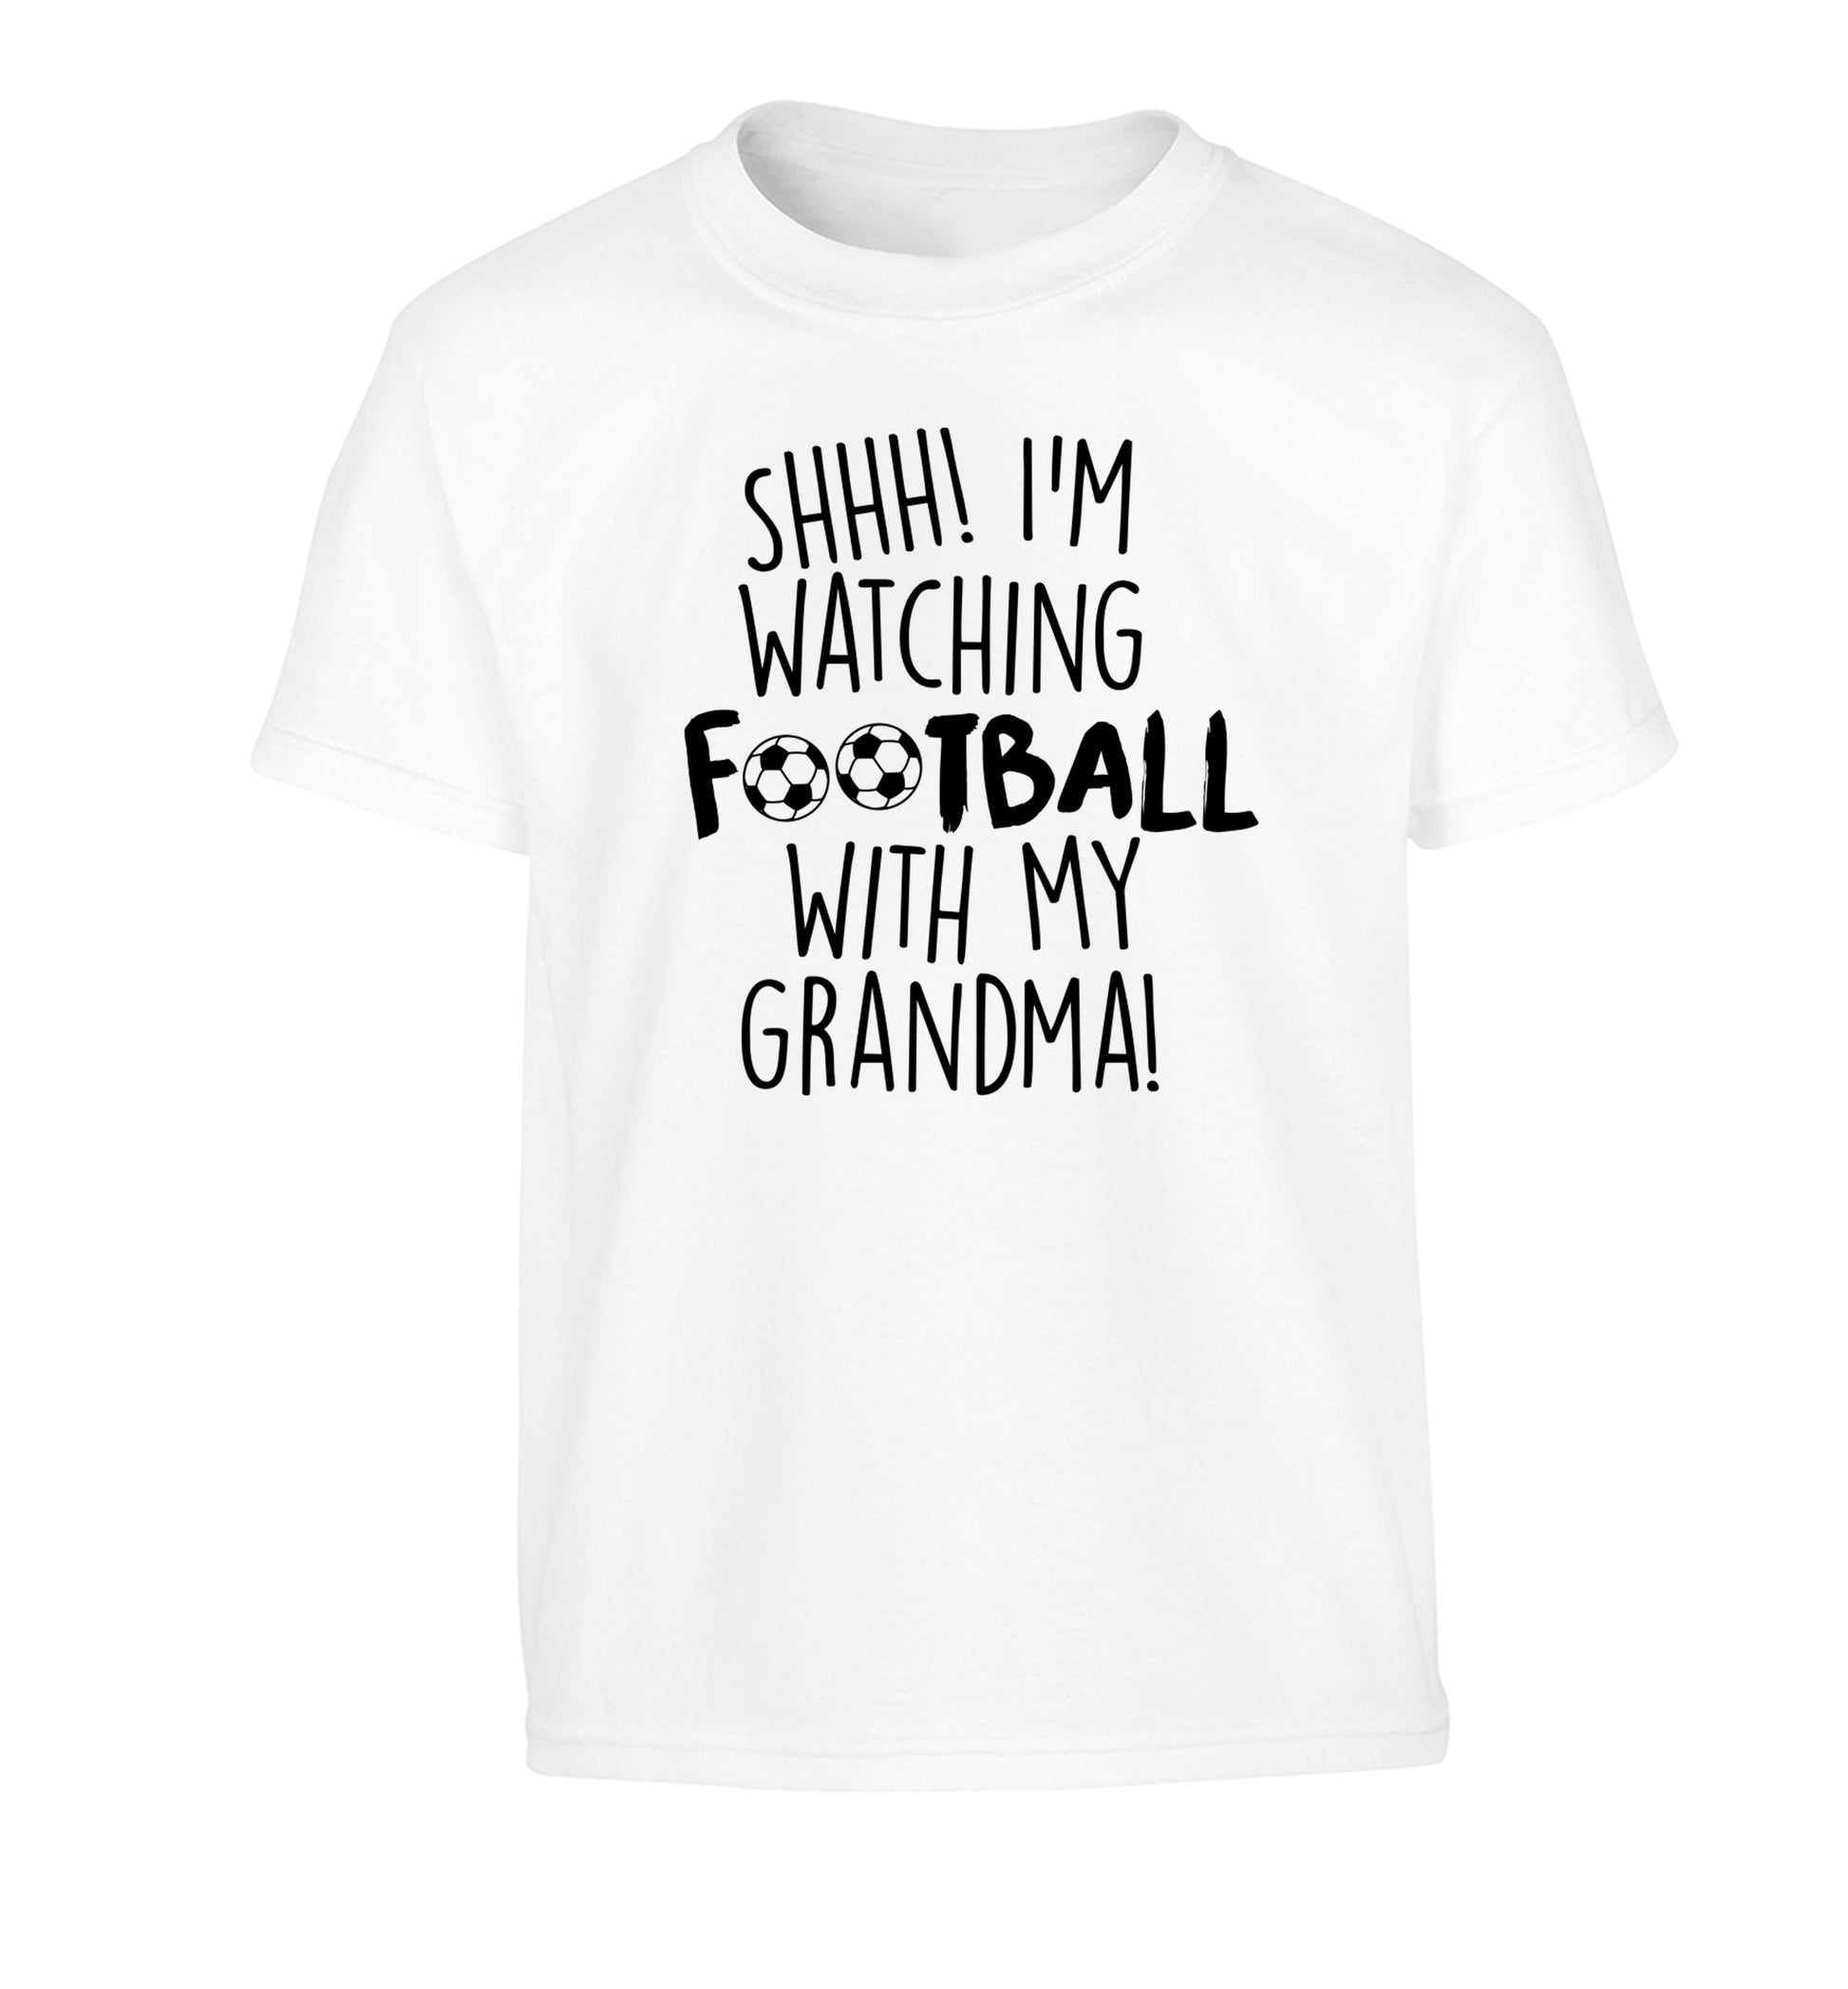 Shhh I'm watching football with my grandma Children's white Tshirt 12-14 Years